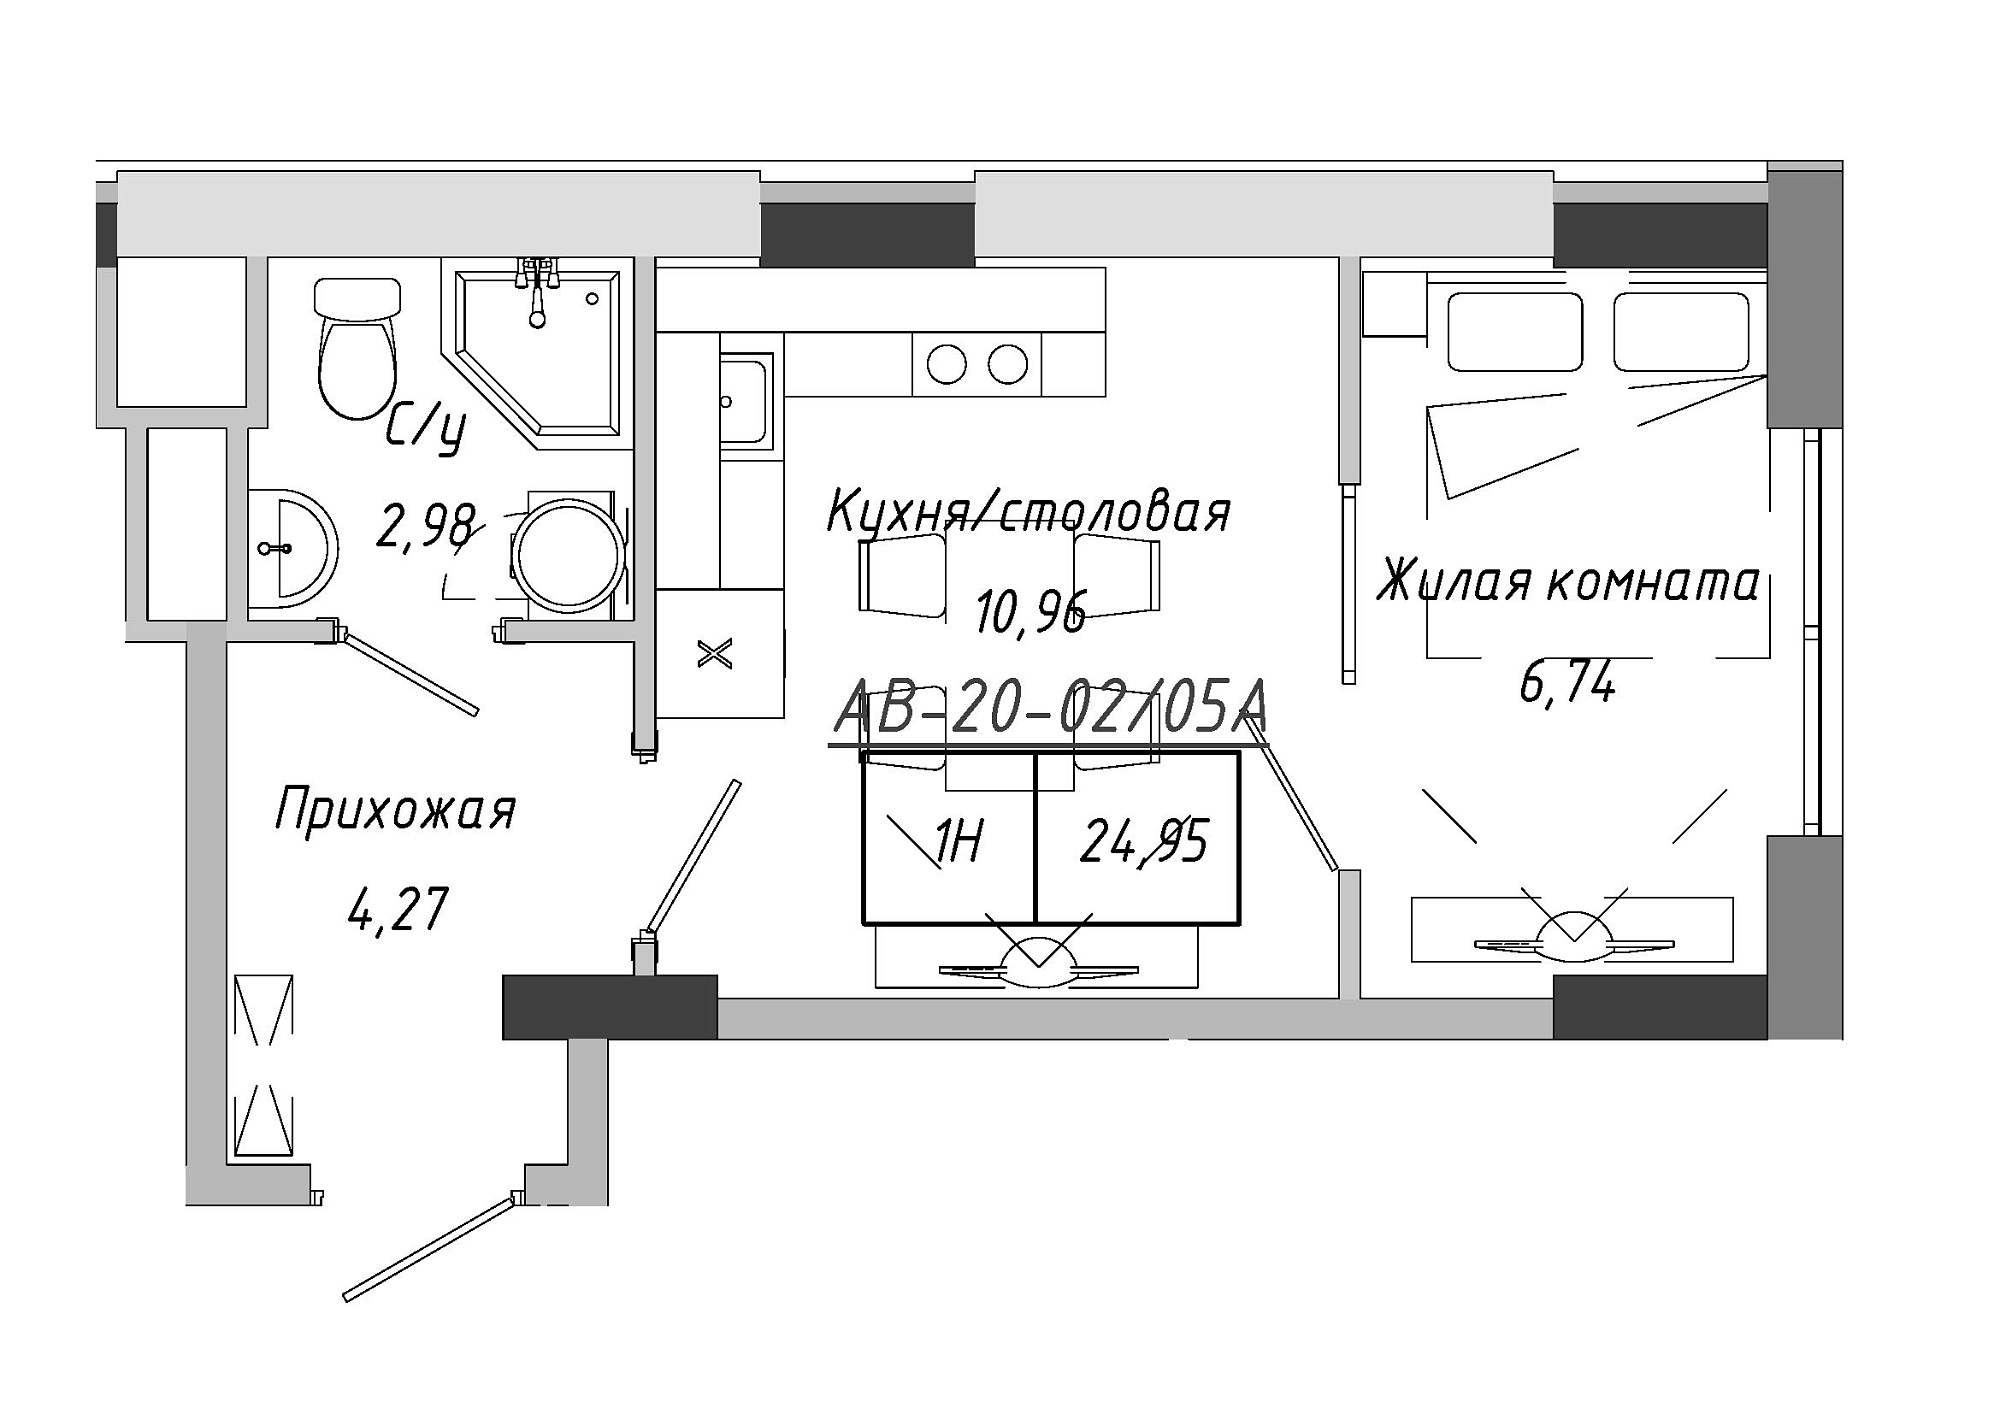 Планування 1-к квартира площею 24.95м2, AB-20-02/0005а.